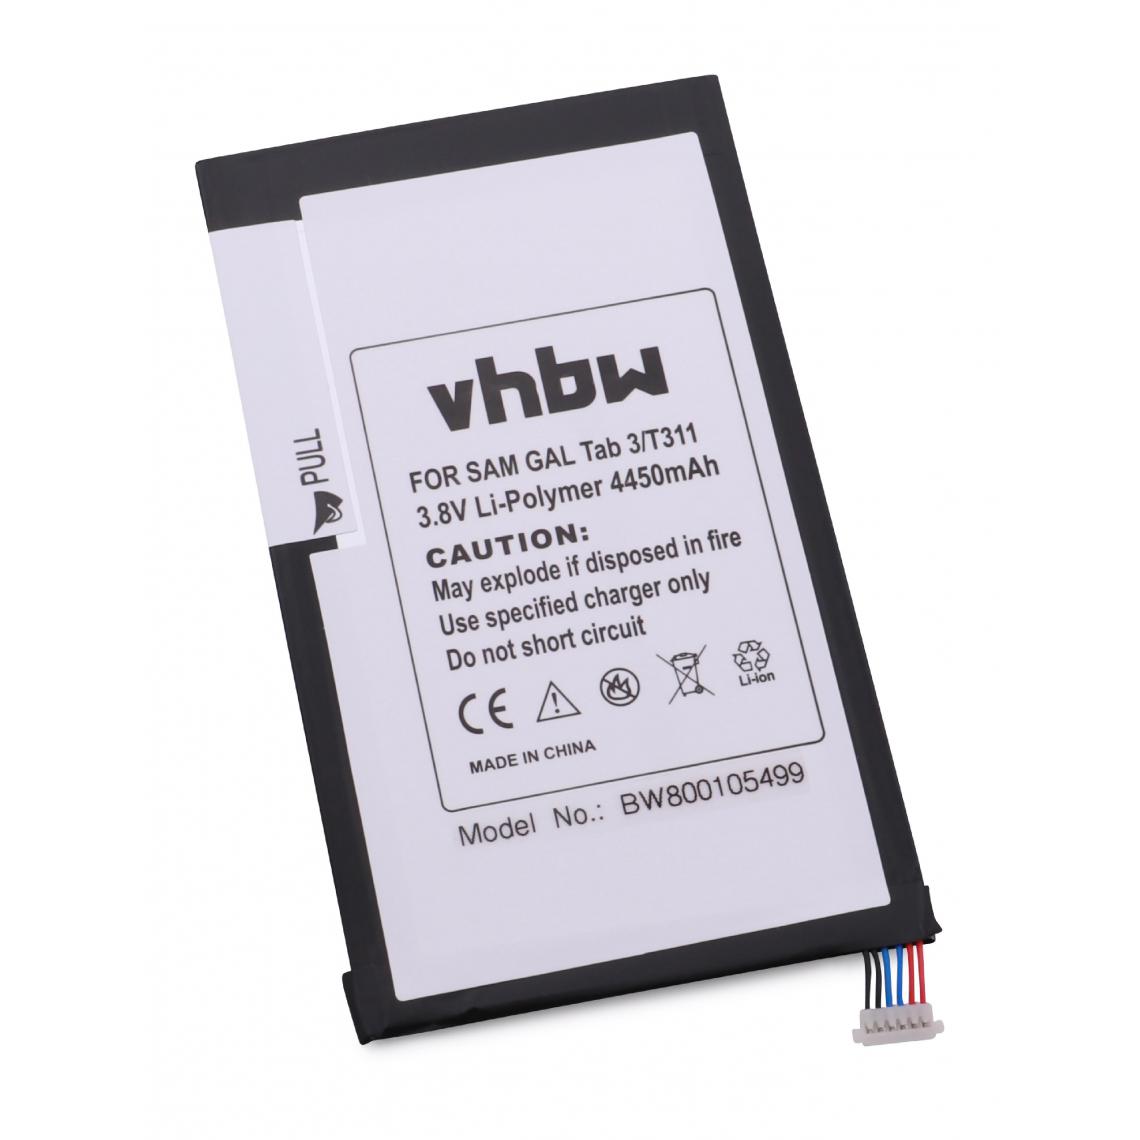 Vhbw - vhbw Batterie remplacement pour Samsung AAaD415JS/7-B, SP3379D1H pour tablette pad (4450mAh, 3,8V, Li-polymère) - Batterie PC Portable